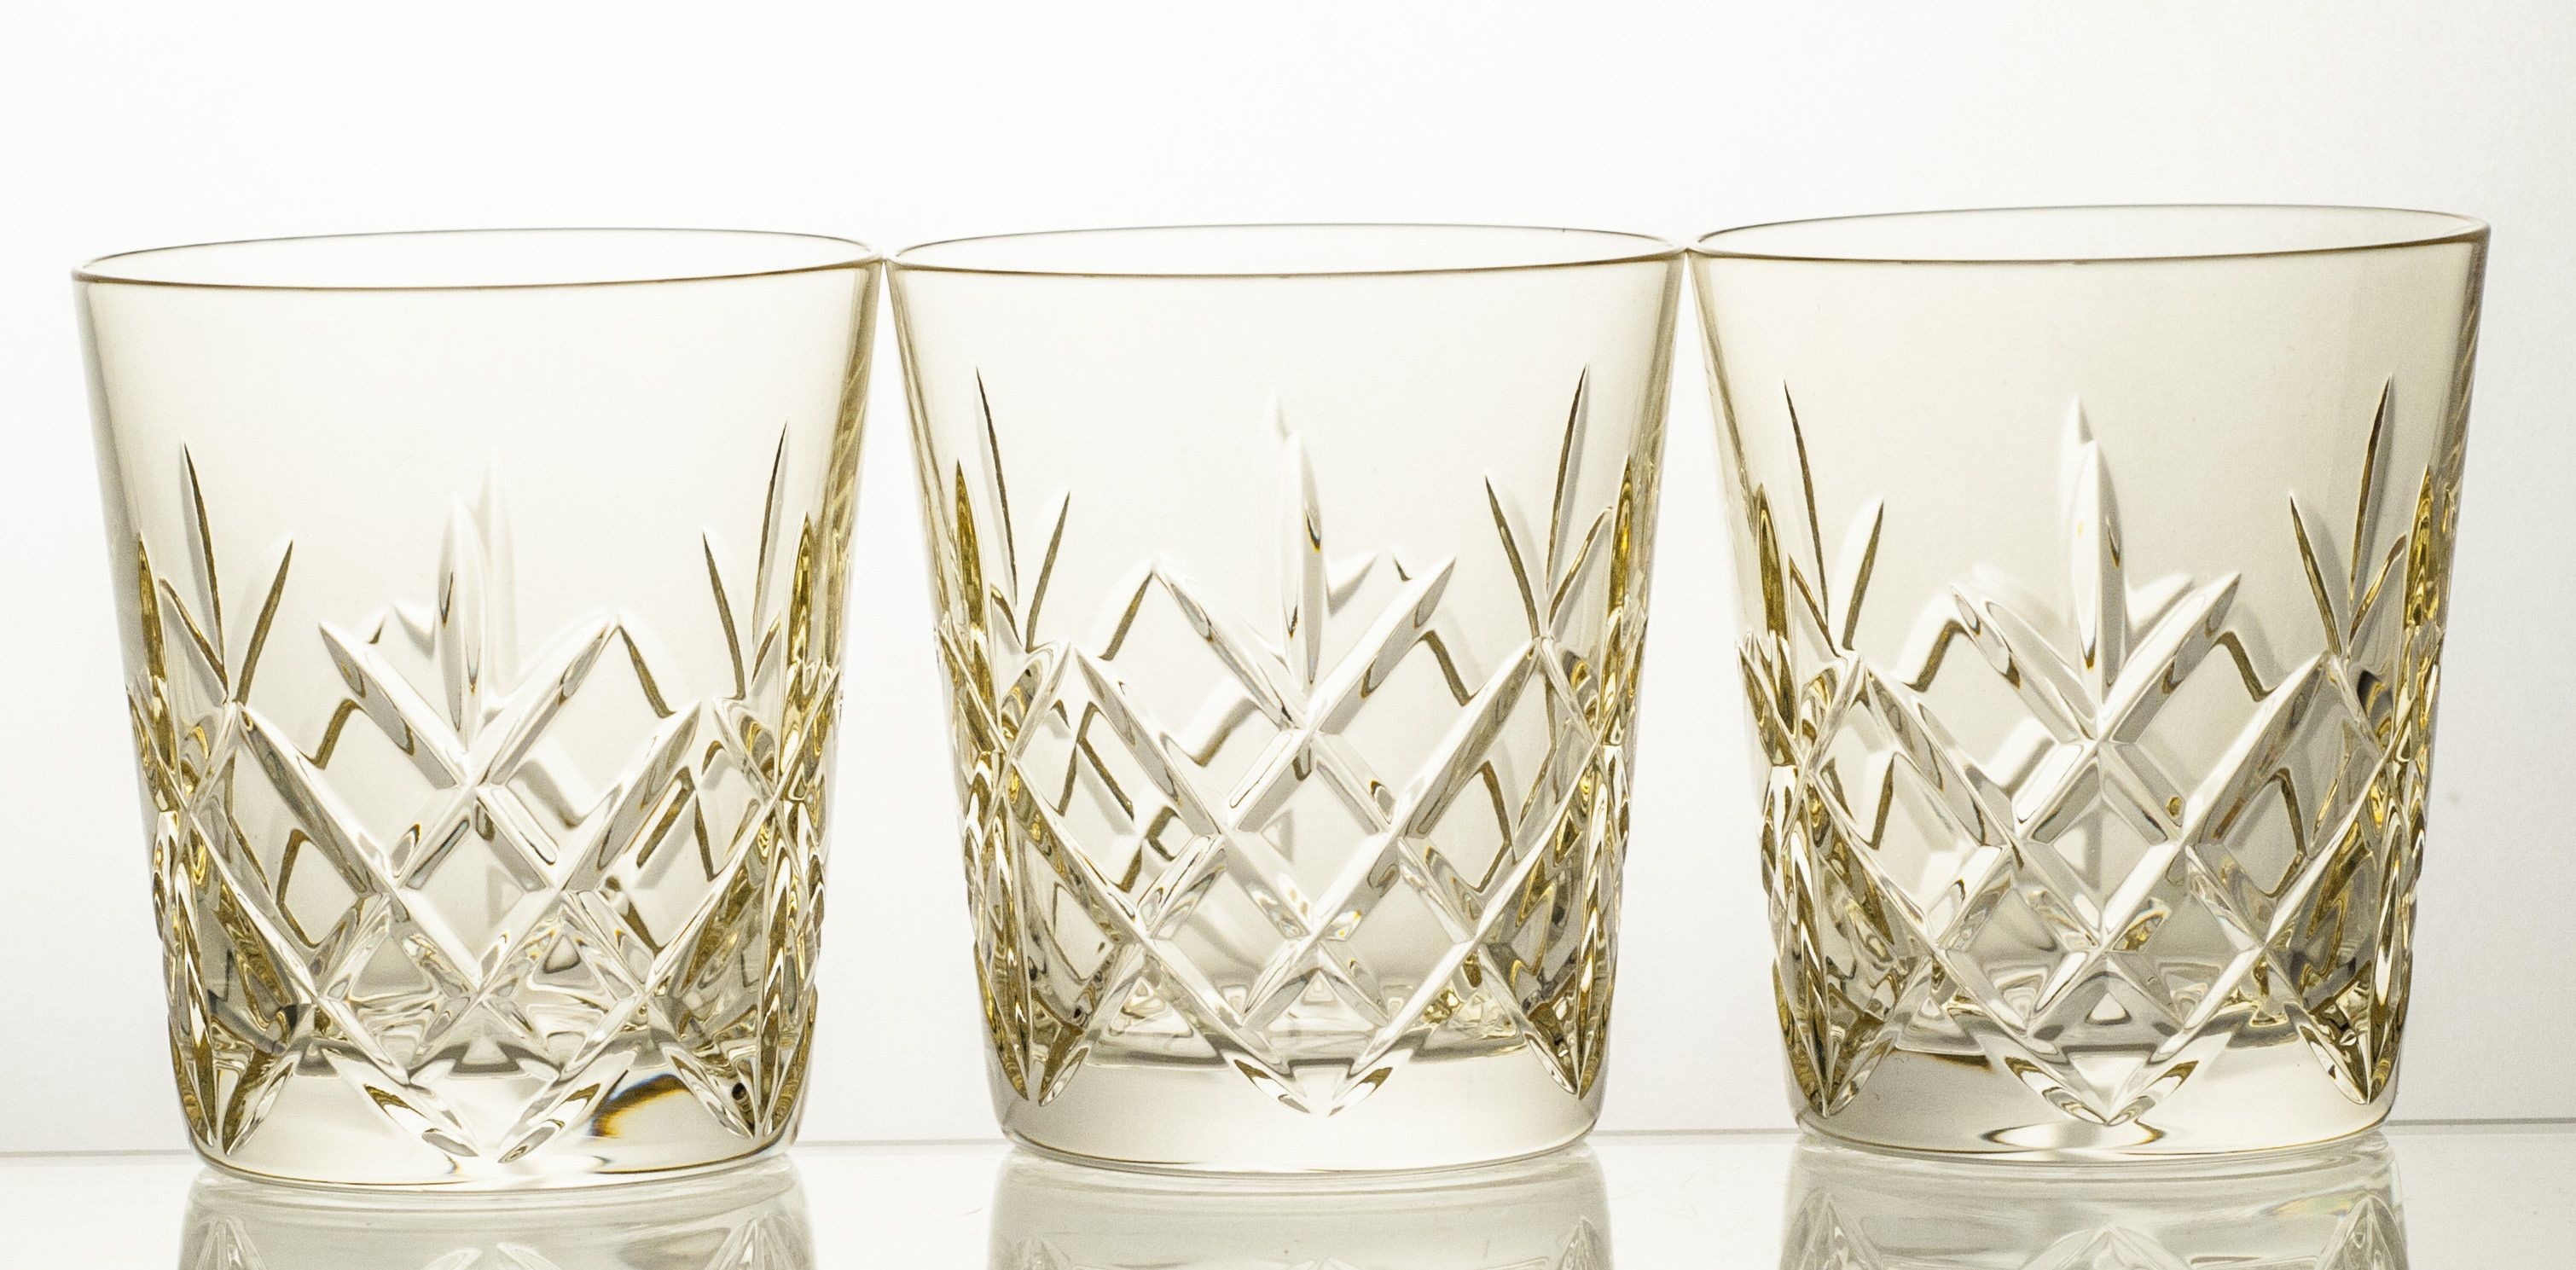 Crystaljulia Szklanki kryształowe do whisky 3 sztuki kolorowe 14990